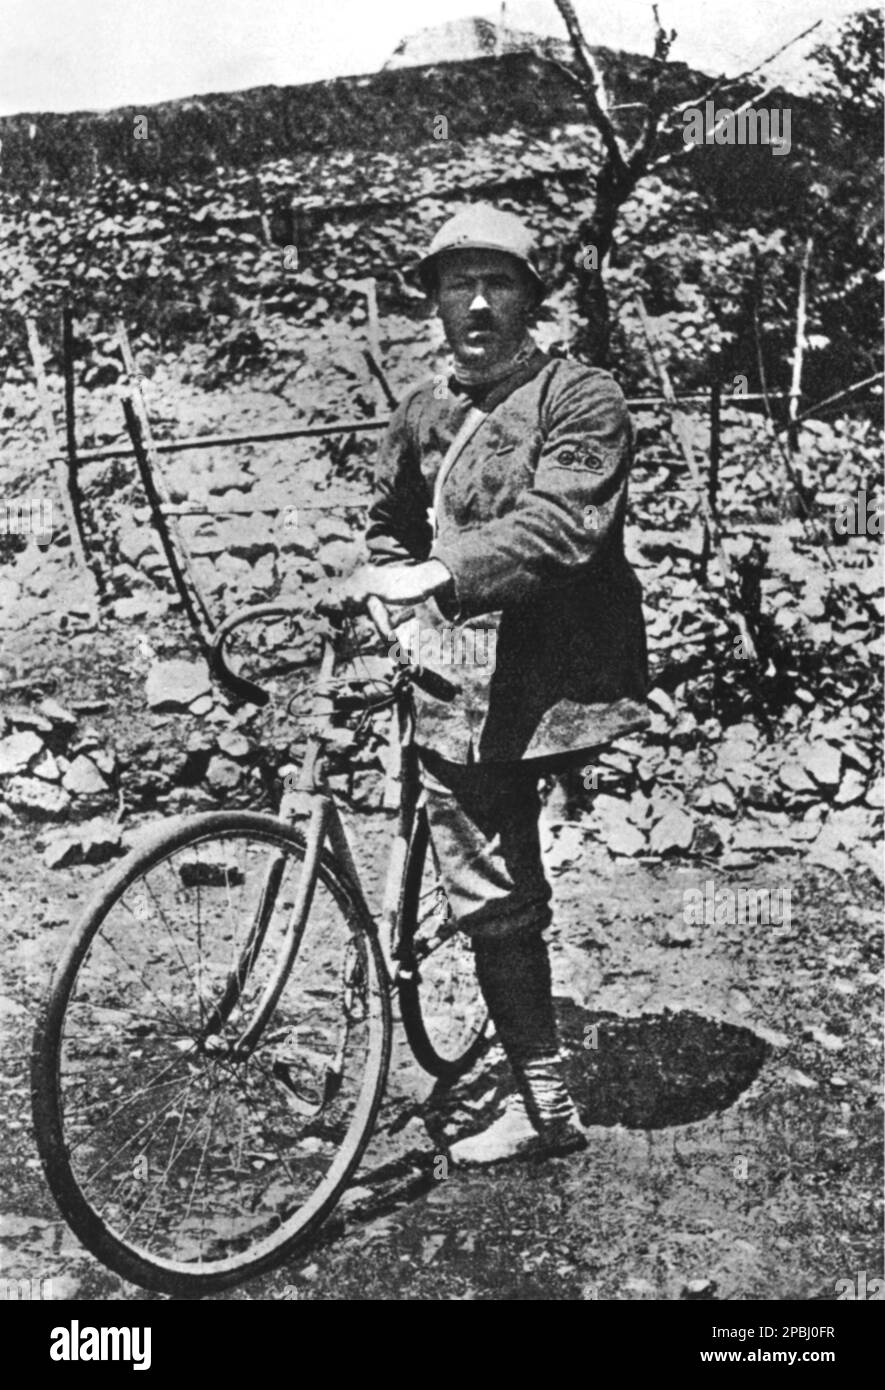 1916 , august , Monfalcone, Italien : The Bersagliere ENRICO TOTI ( Roma 1882 - in der Nähe von Monfalcone 1916 ) Auf dem Fahrrad mit nur einem Bein - PATRIOTA - PATRIOT - erster WELTKRIEG - ERSTER WELTKRIEG - PRIMA GUERRA MONDIALE - Soldato - Soldat - BERSAGLIERE - BERSAGLIERI - erster Weltkrieg - PRIMA GUERRA MONDIALE - Grande Guerra - großer Krieg - foto Storiche - foto Storica - Portrait - Rituto - Baffi - Schnurrbart - Militäruniform - Uniforme divisa militare - ITALIA - GESCHICHTSFOTOS - Eroe - Held - Bicicletta - behindert - Archivio GBB Stockfoto